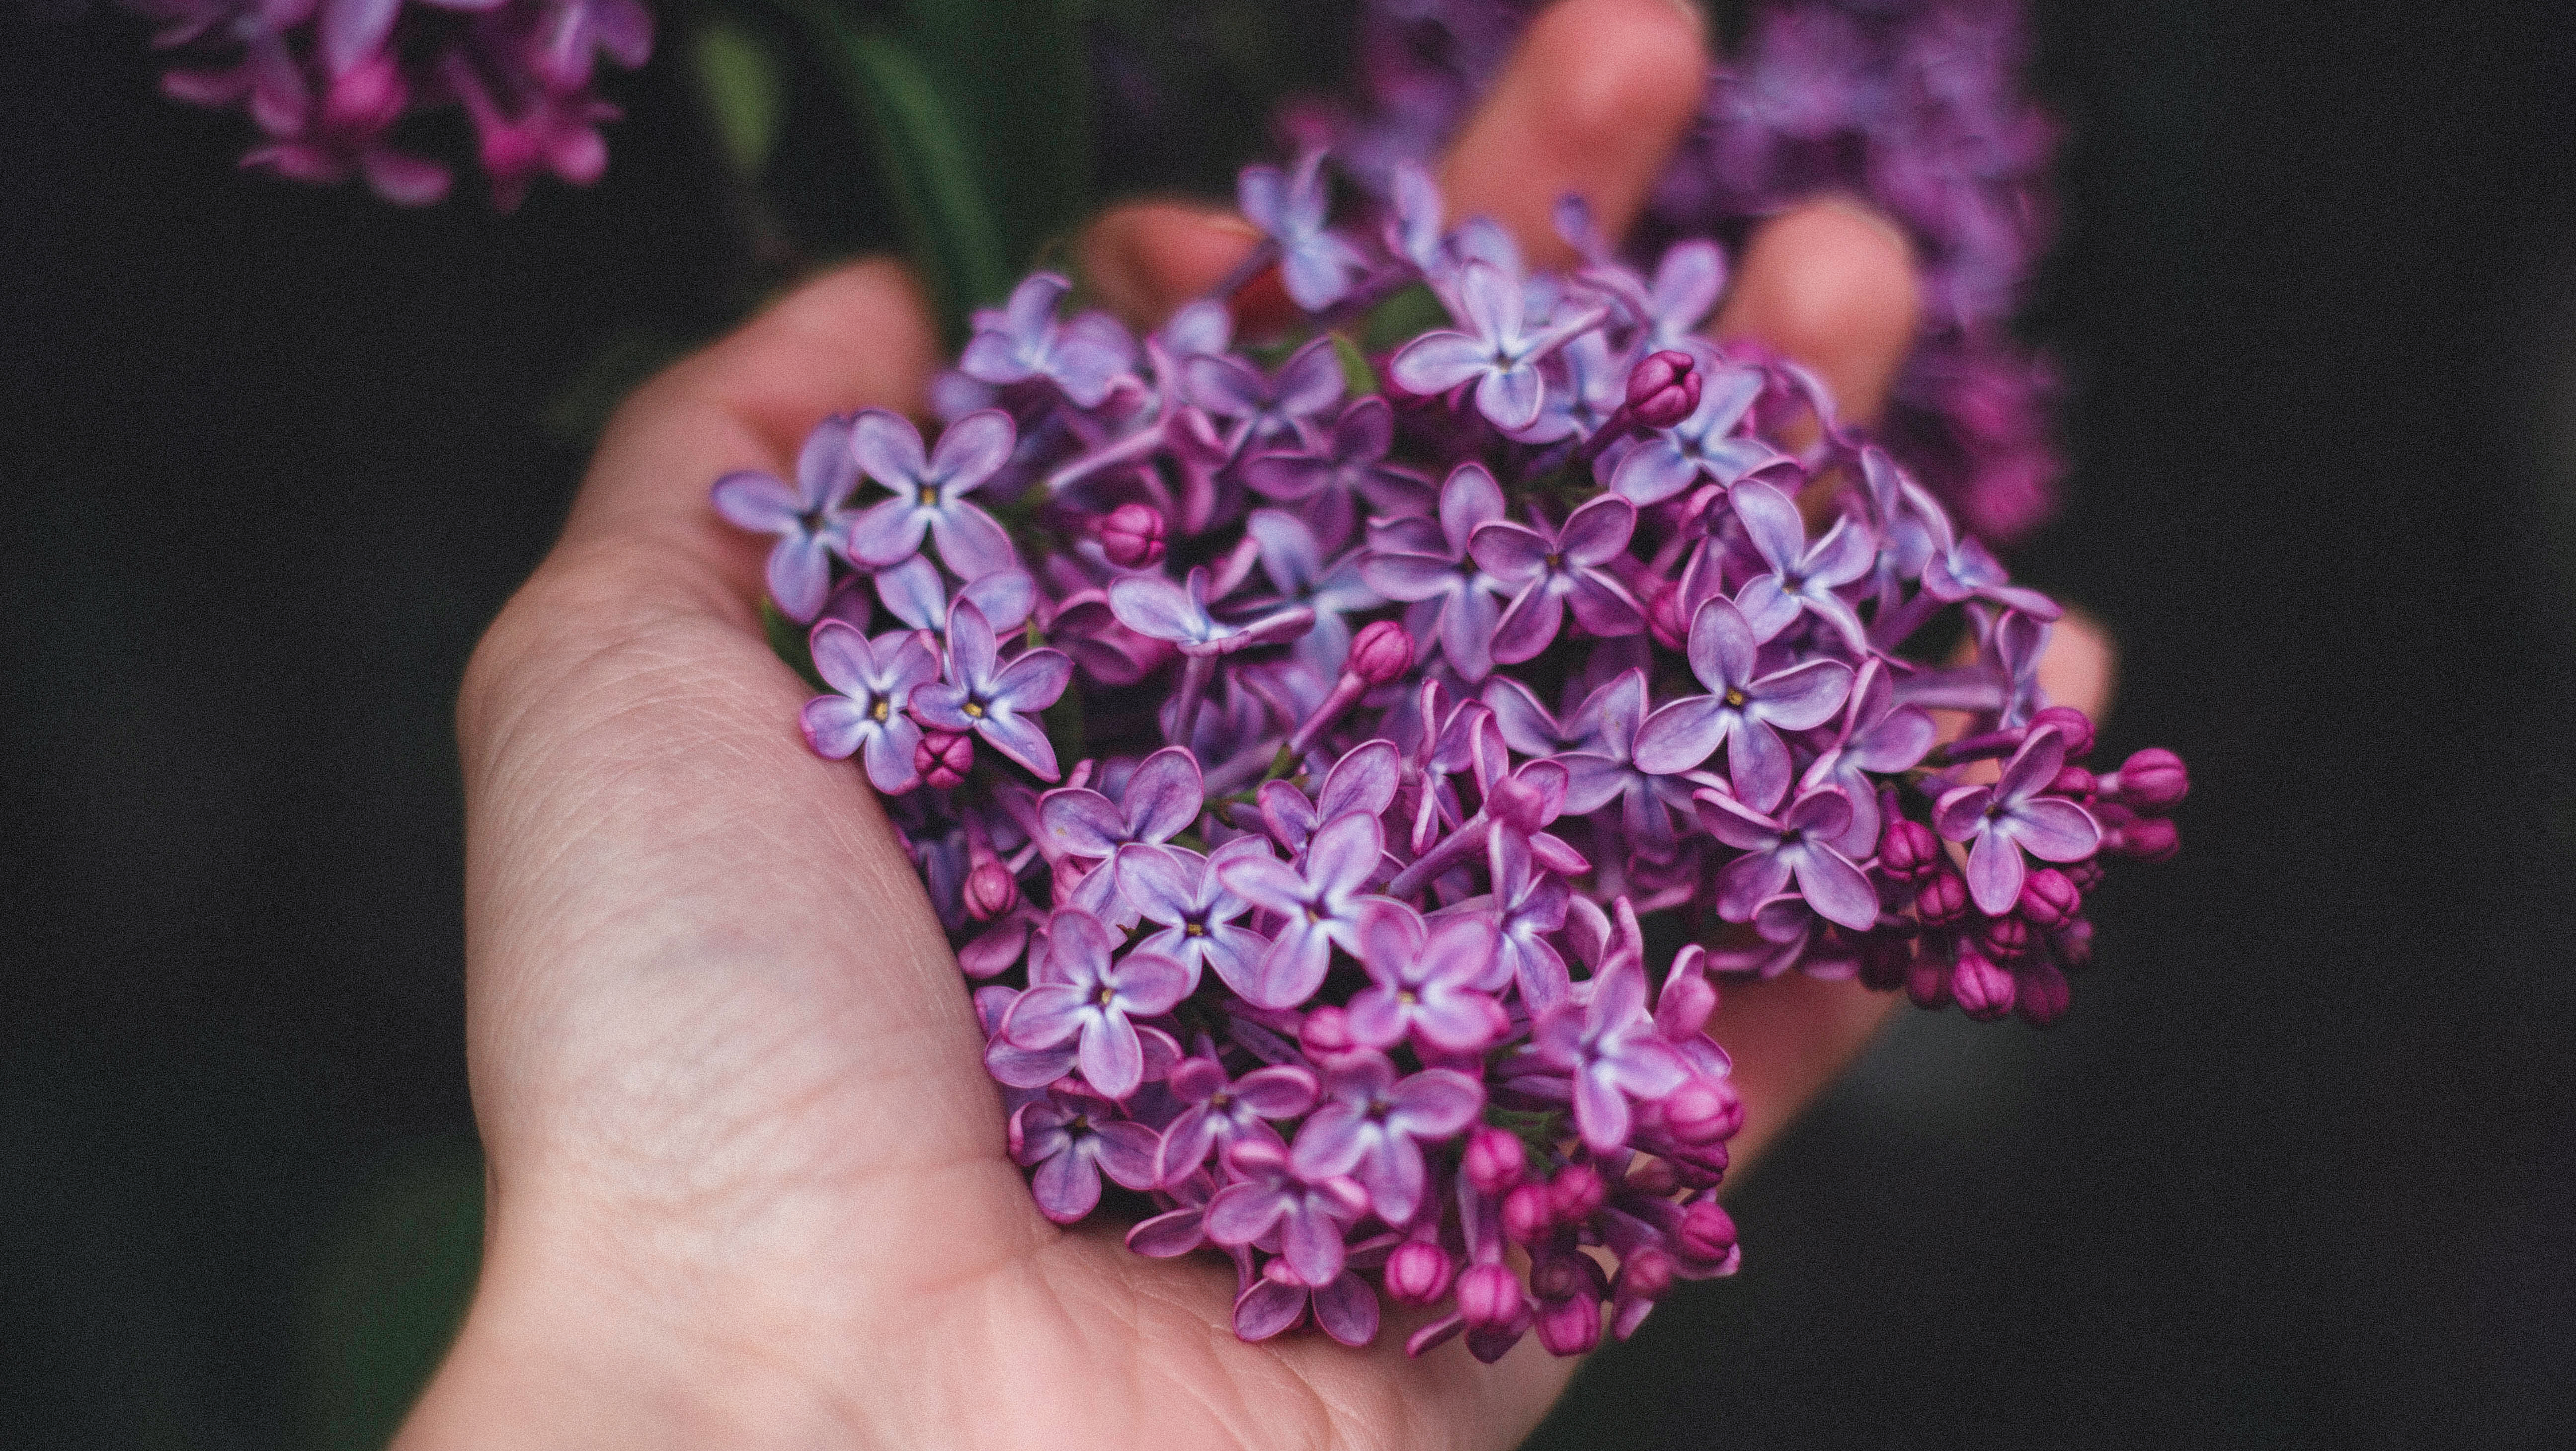 Lavendel pflanzen, richtig pflegen und nutzen